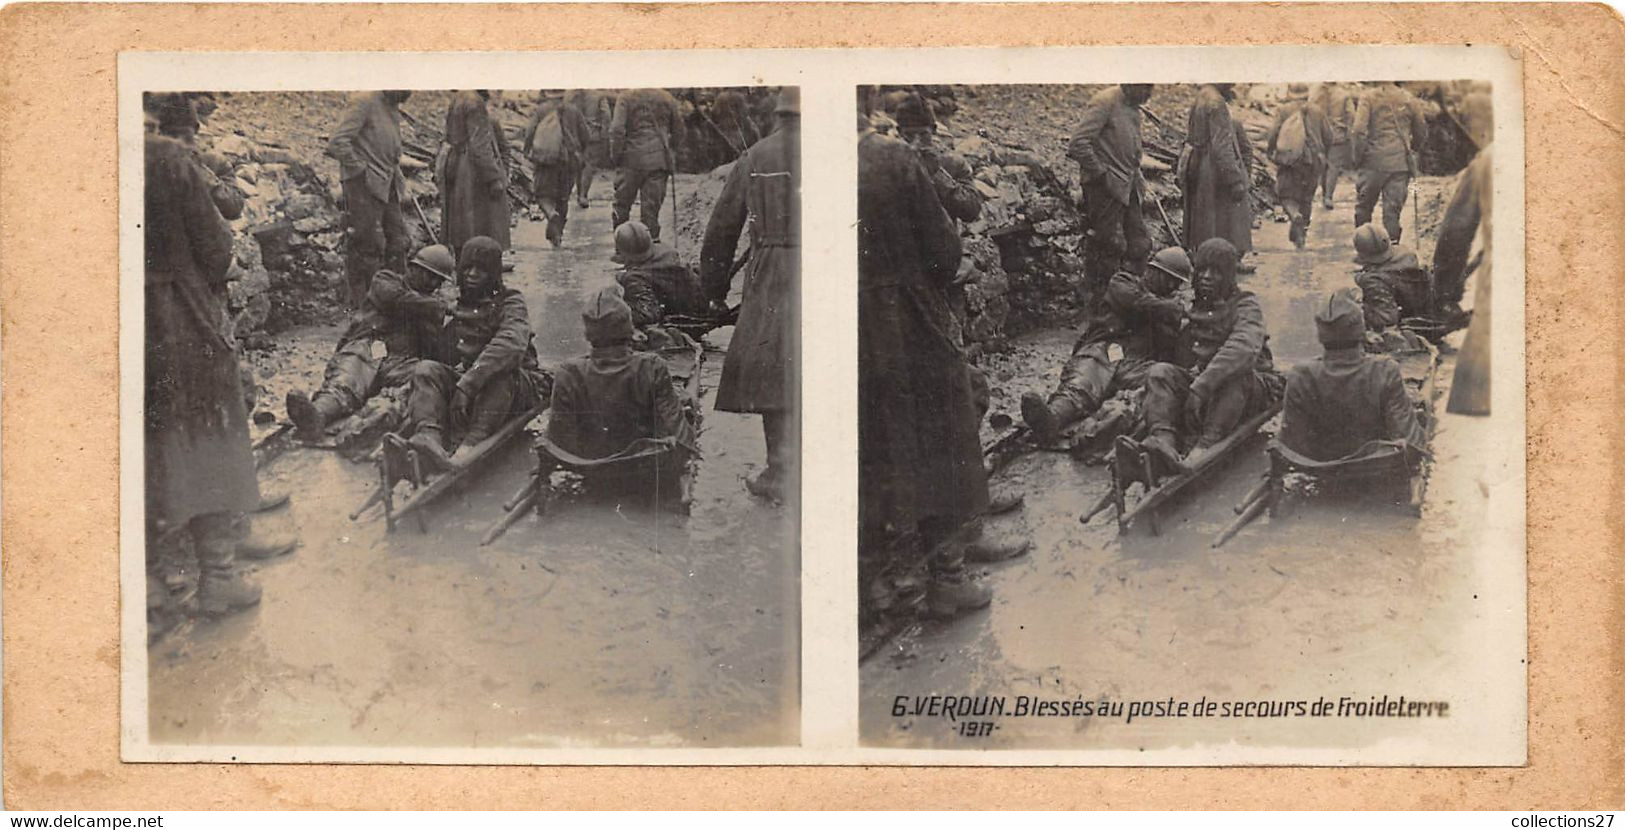 55-VERDUN- 1917 BLESSES AU POSTE DE SECOURS DE FROIDETERRE - Stereo-Photographie